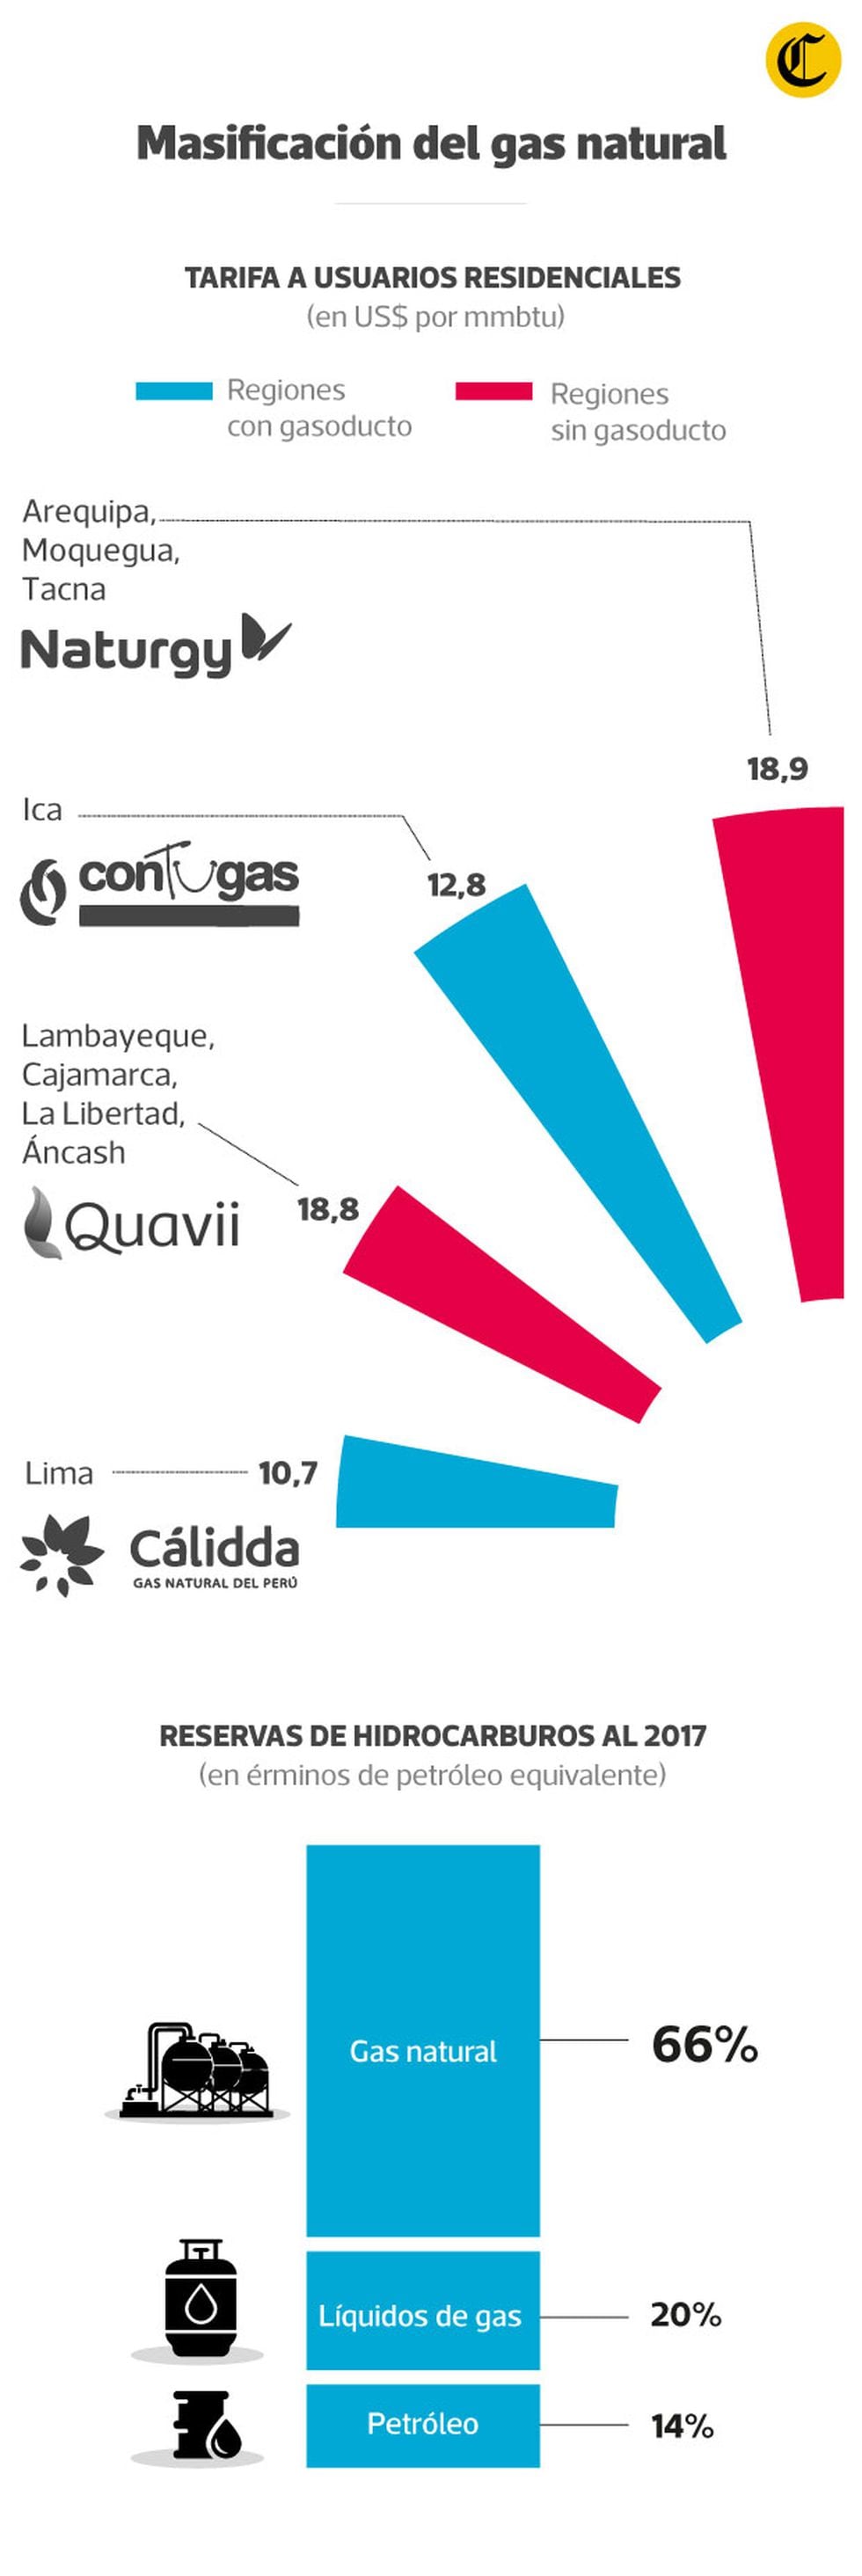 El Perú posee más abundancia de gas natural que de otros hidrocarburos.